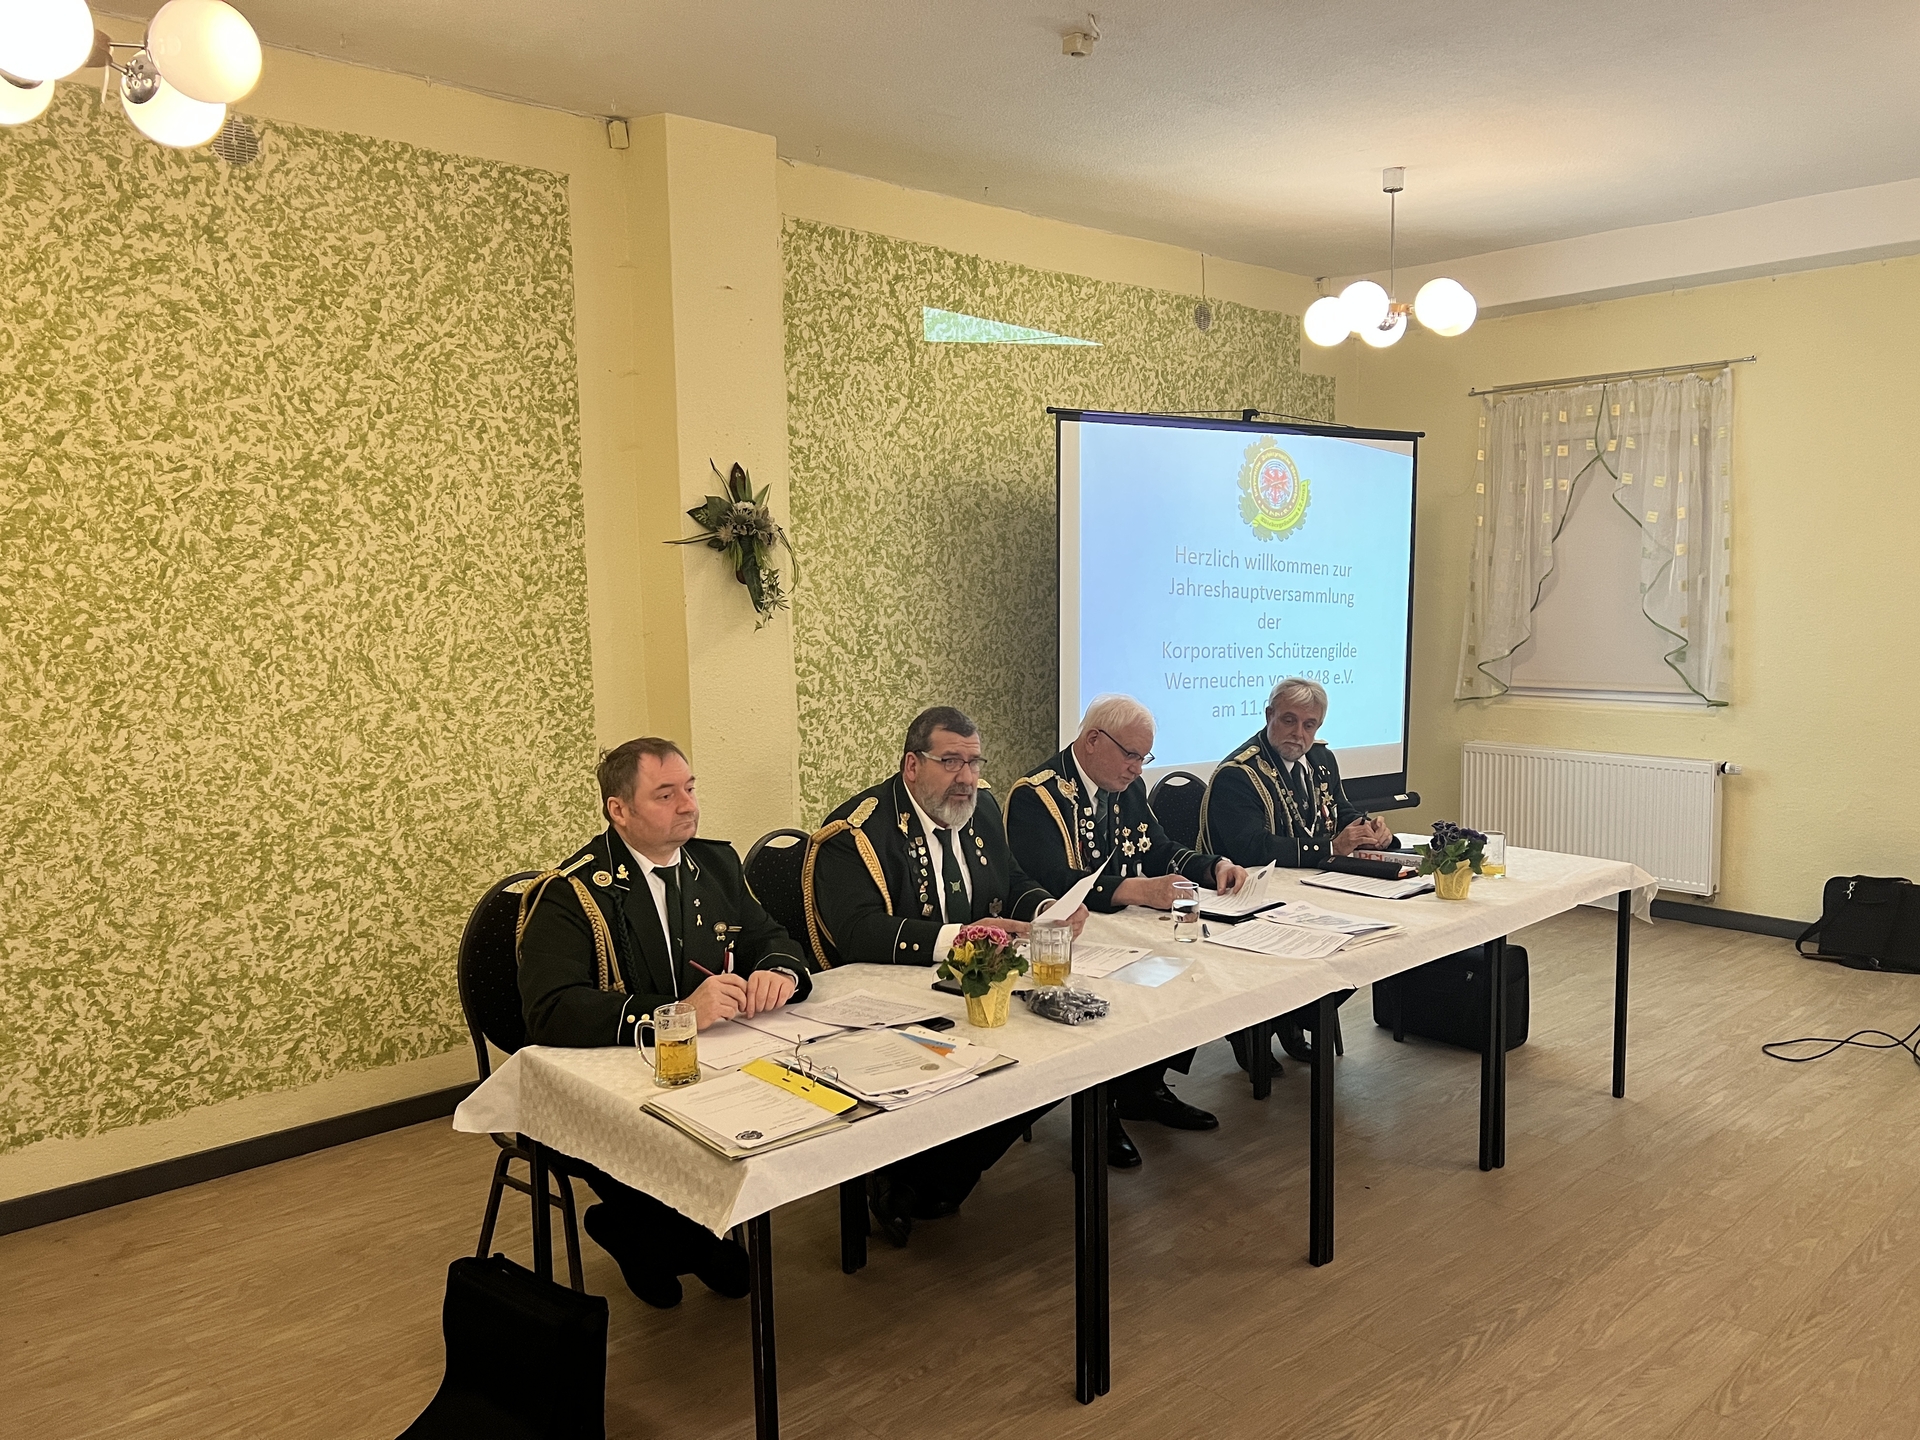 Bild: Der Vorstand hat eingeladen (Mirko, Maik, Hubert, Michael - v.l.n.r.)